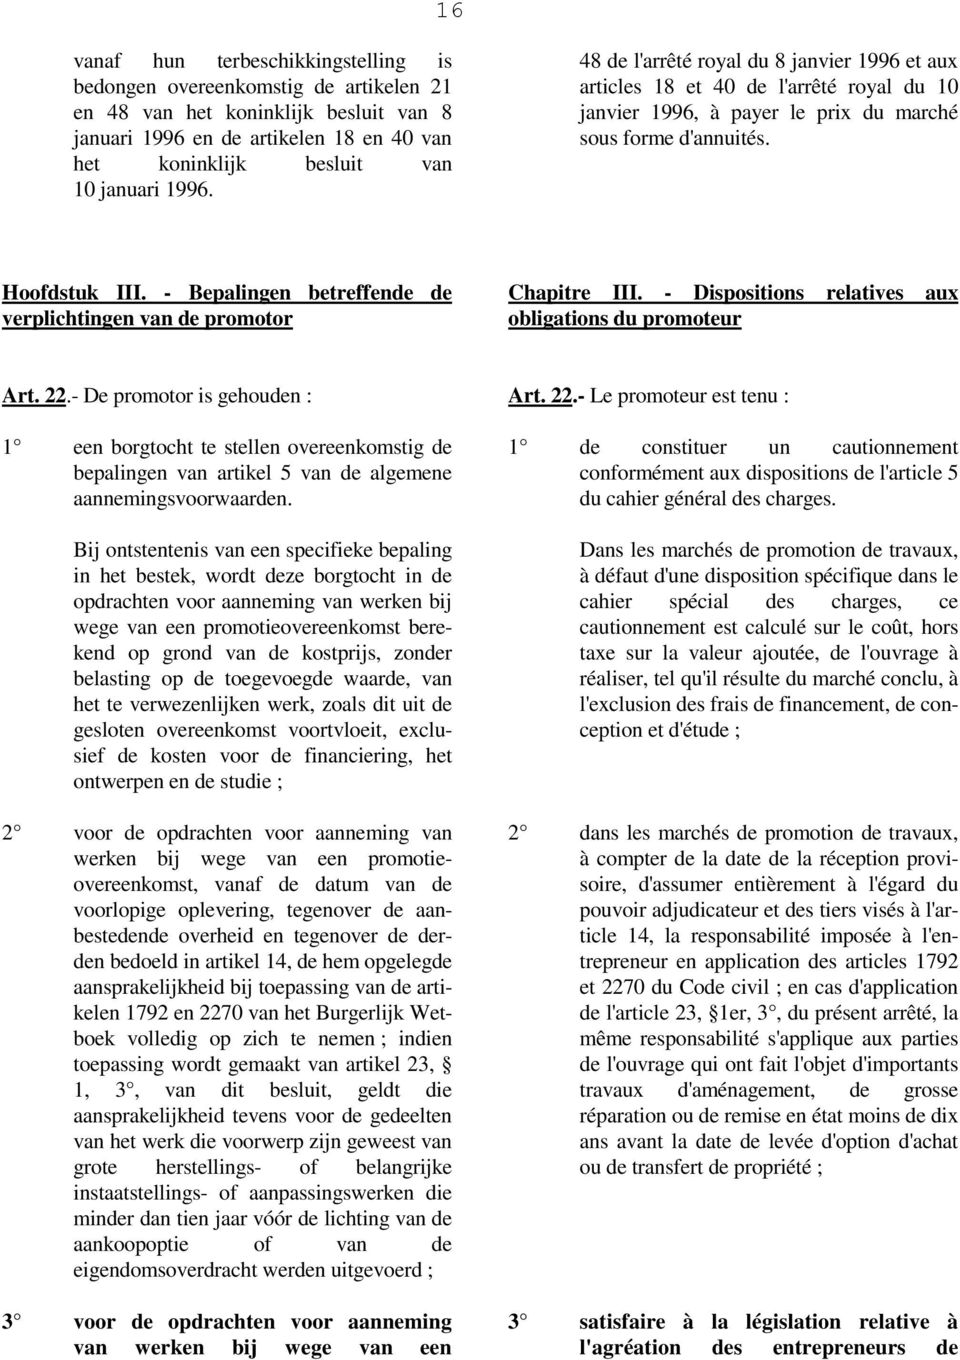 - Bepalingen betreffende de verplichtingen van de promotor Chapitre III. - Dispositions relatives aux obligations du promoteur Art. 22.